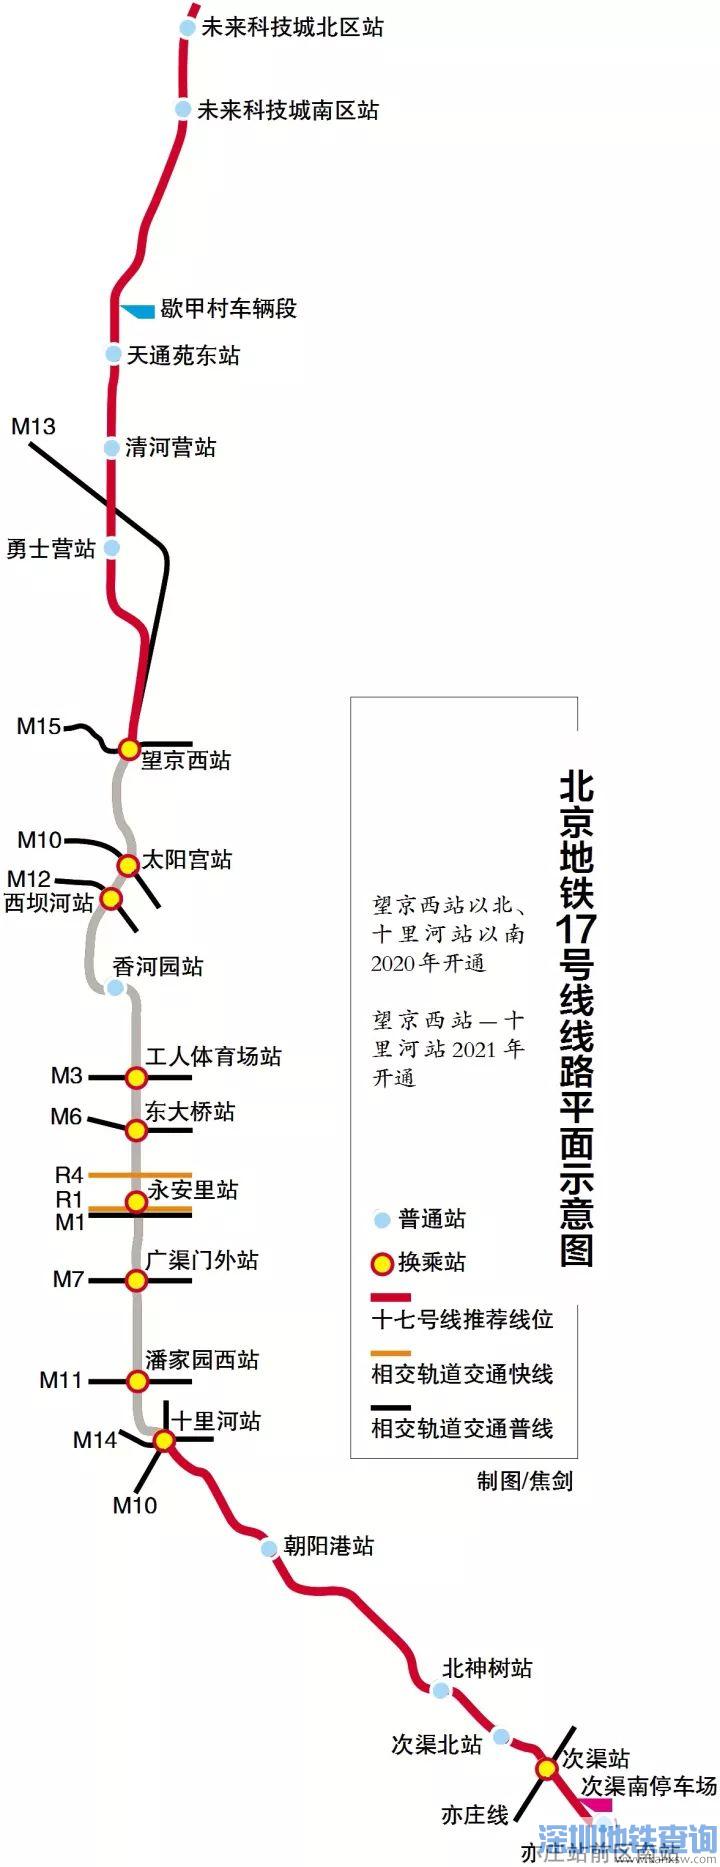 北京地铁17号线近期全面开工建设 南北贯通将连接中心城区